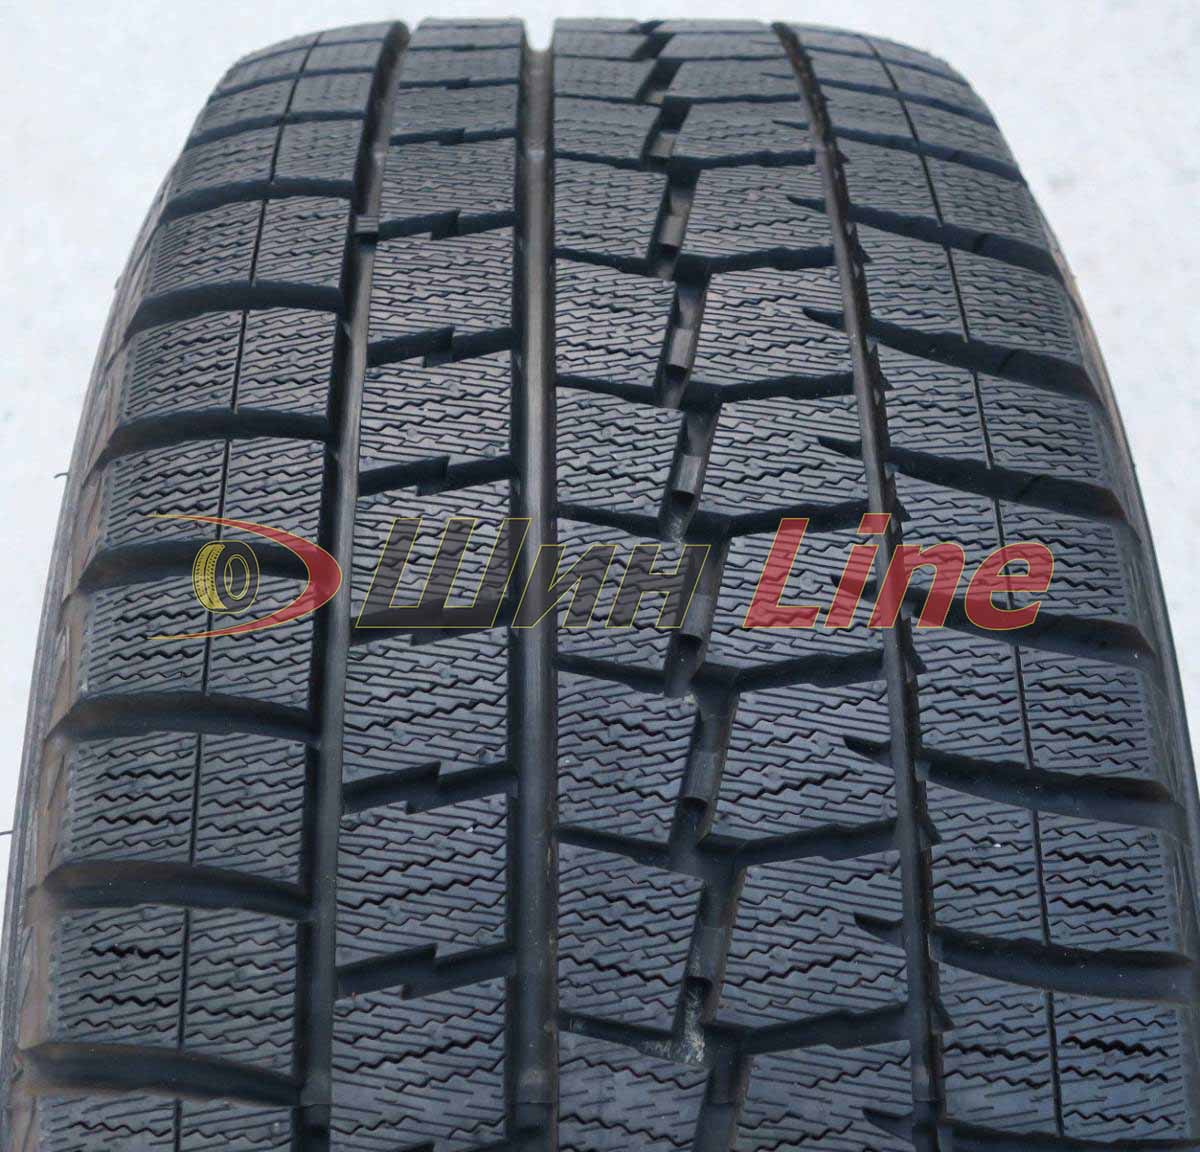 Легковая шина зимняя нешипованная Dunlop Winter Maxx WM01 255/45 R18 103T , фото 2